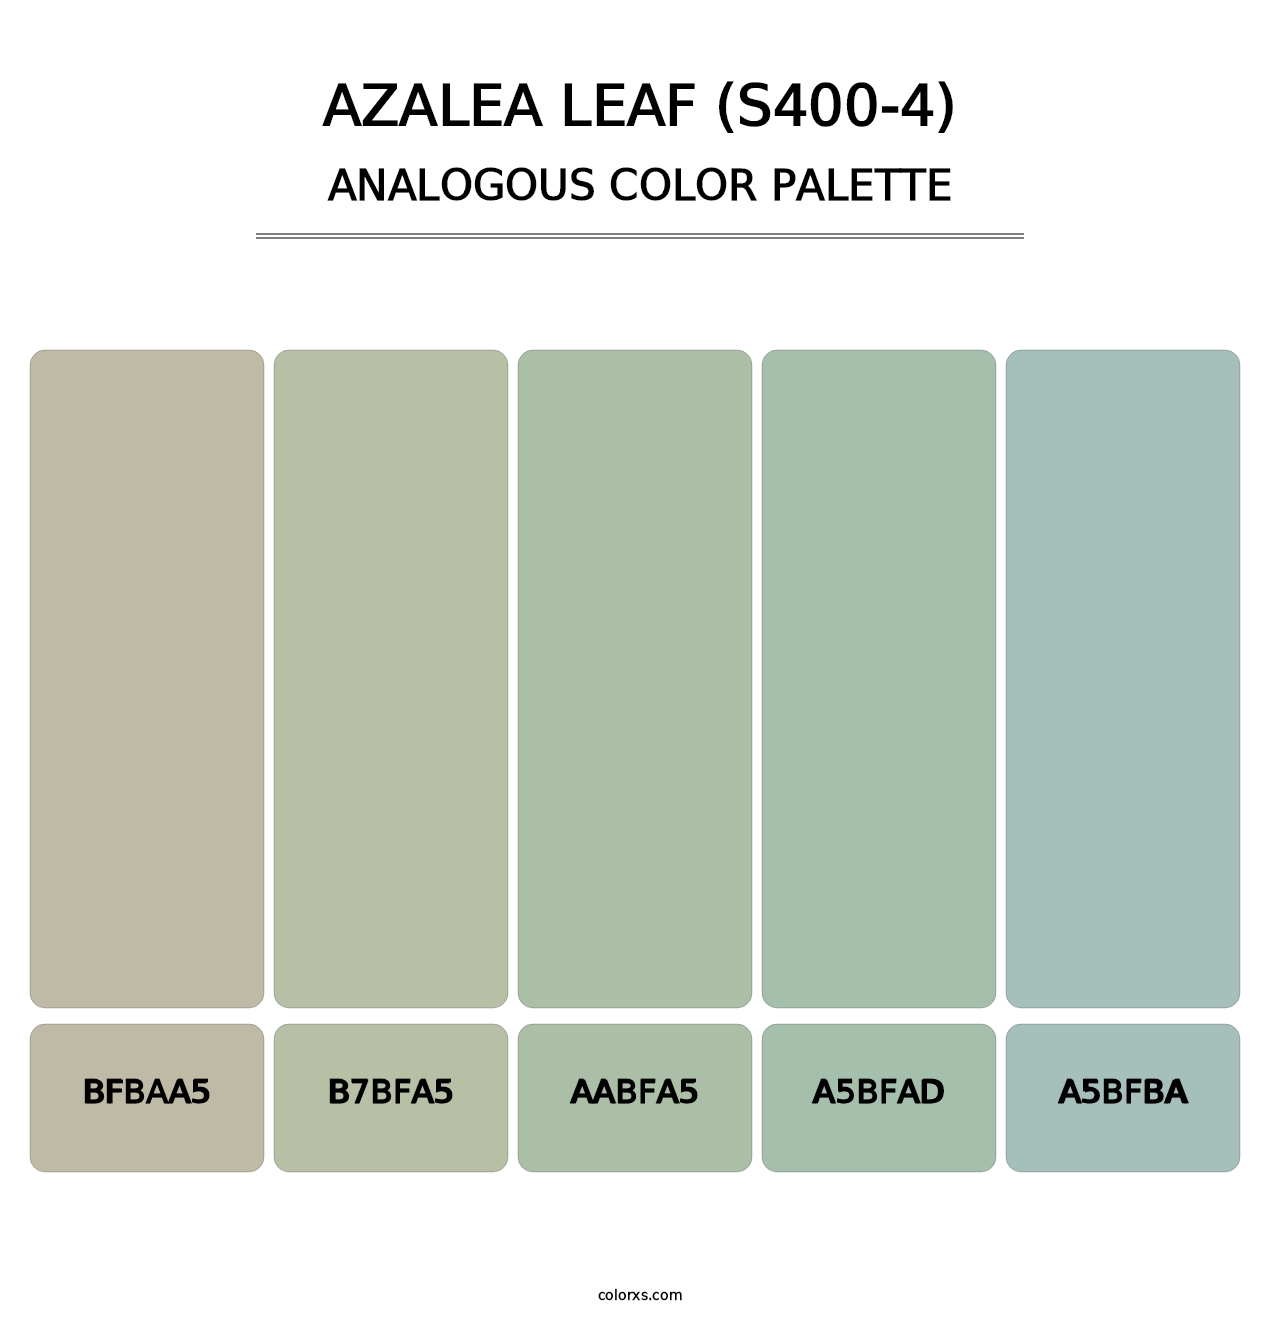 Azalea Leaf (S400-4) - Analogous Color Palette